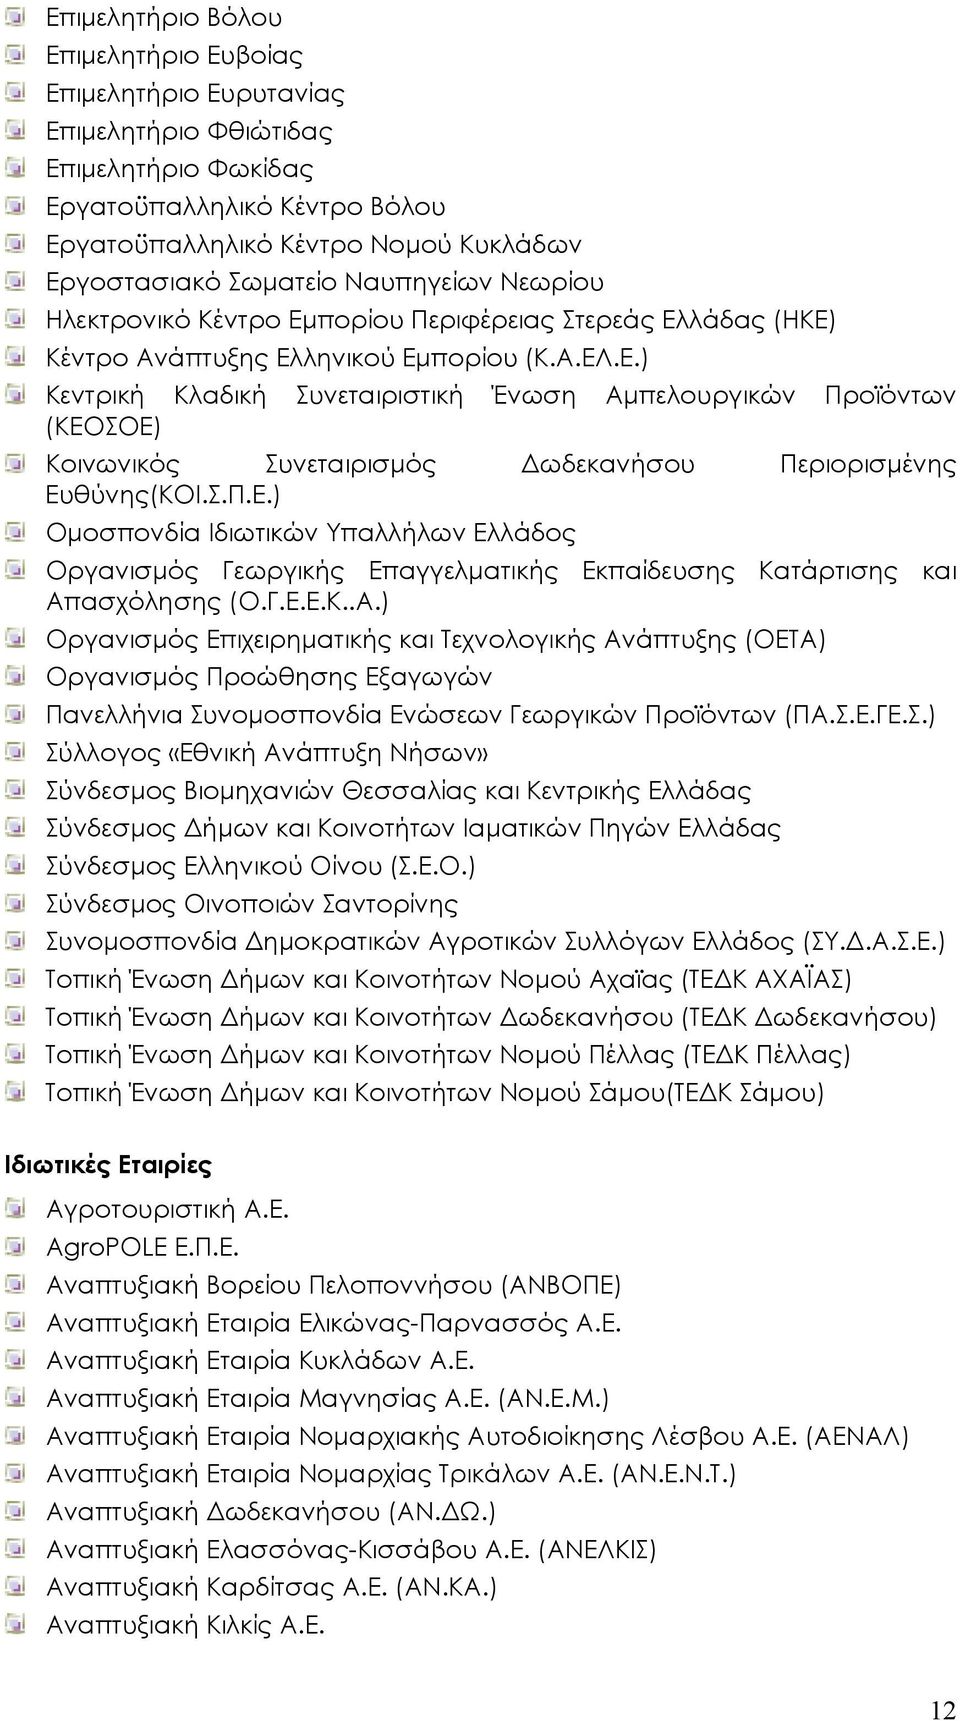 Σ.Π.Ε.) Οµοσπονδία Ιδιωτικών Υπαλλήλων Ελλάδος Οργανισµός Γεωργικής Επαγγελµατικής Εκπαίδευσης Κατάρτισης και Απ